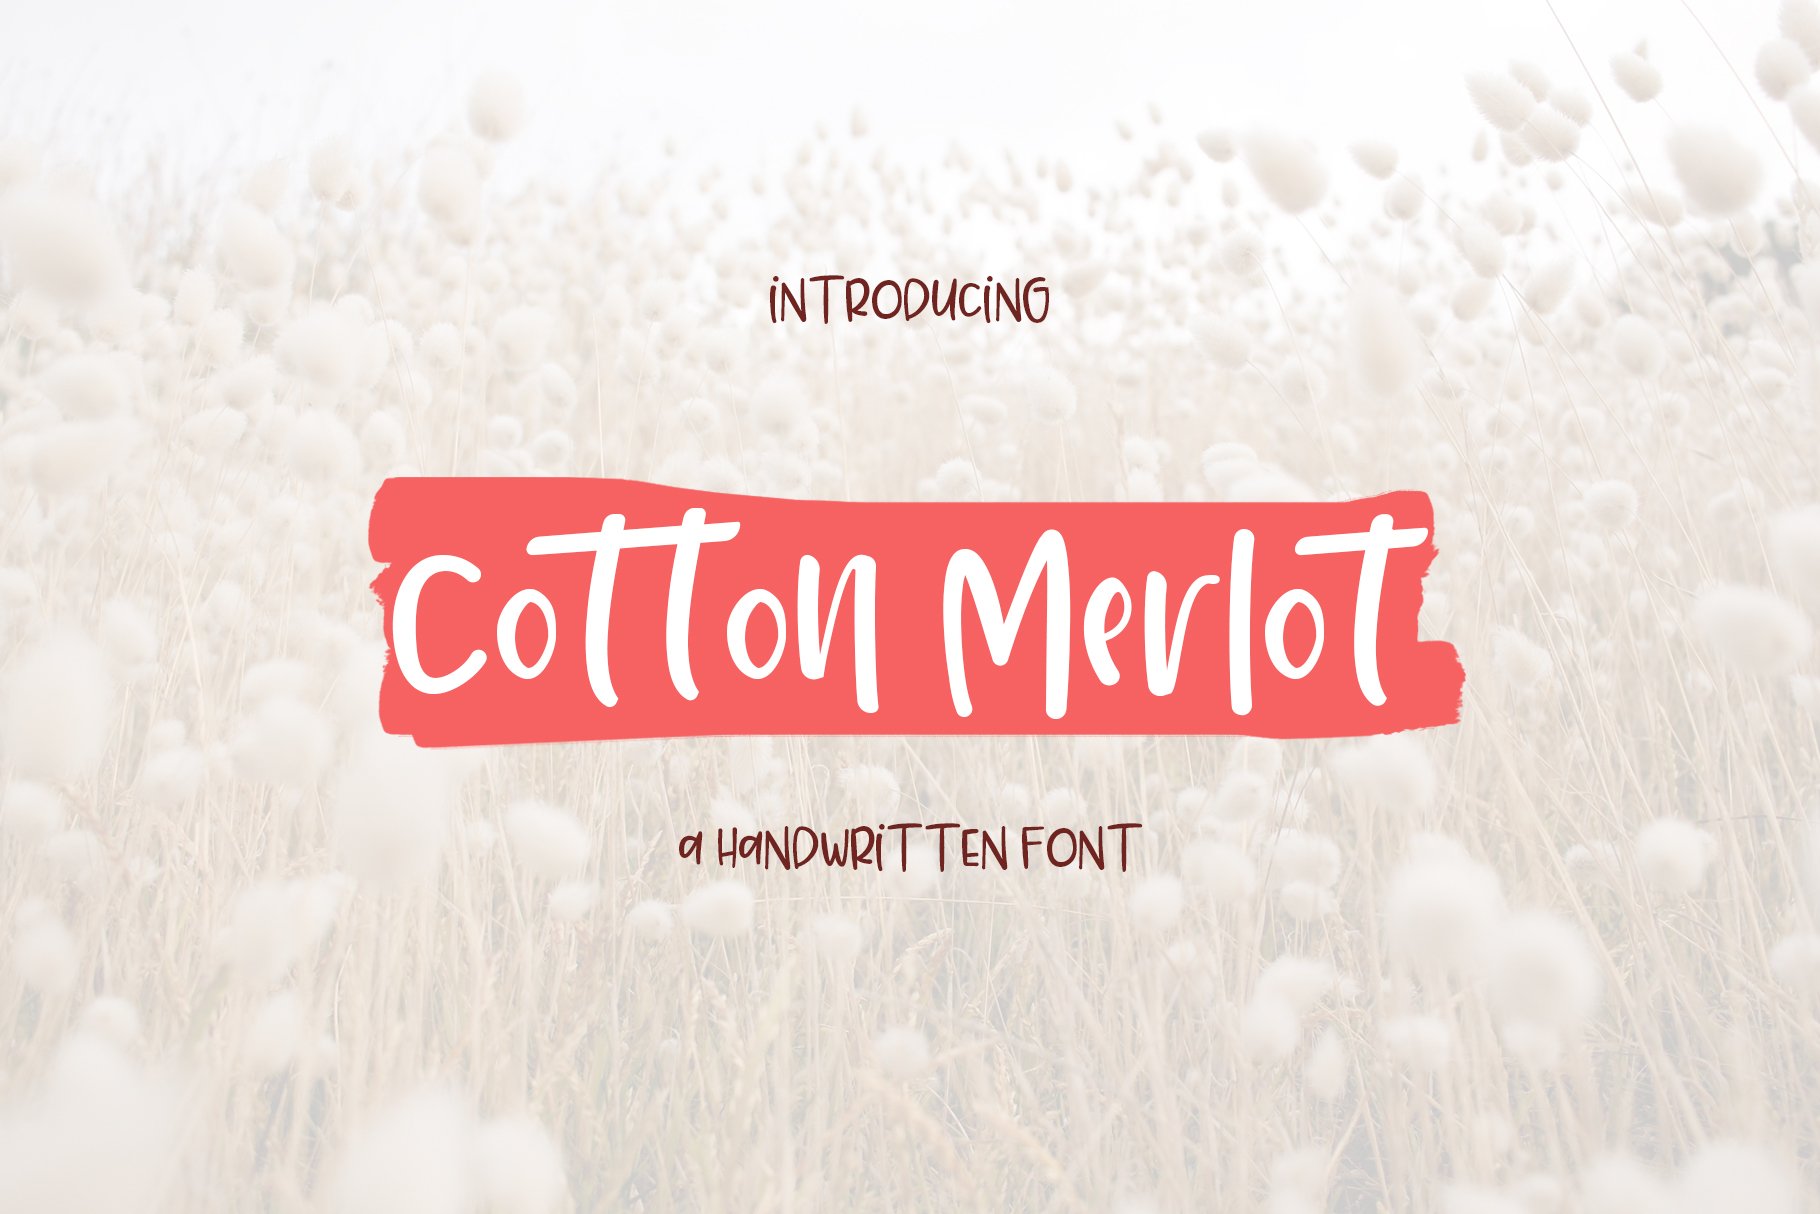 Cotton Merlot - a handwritten font cover image.